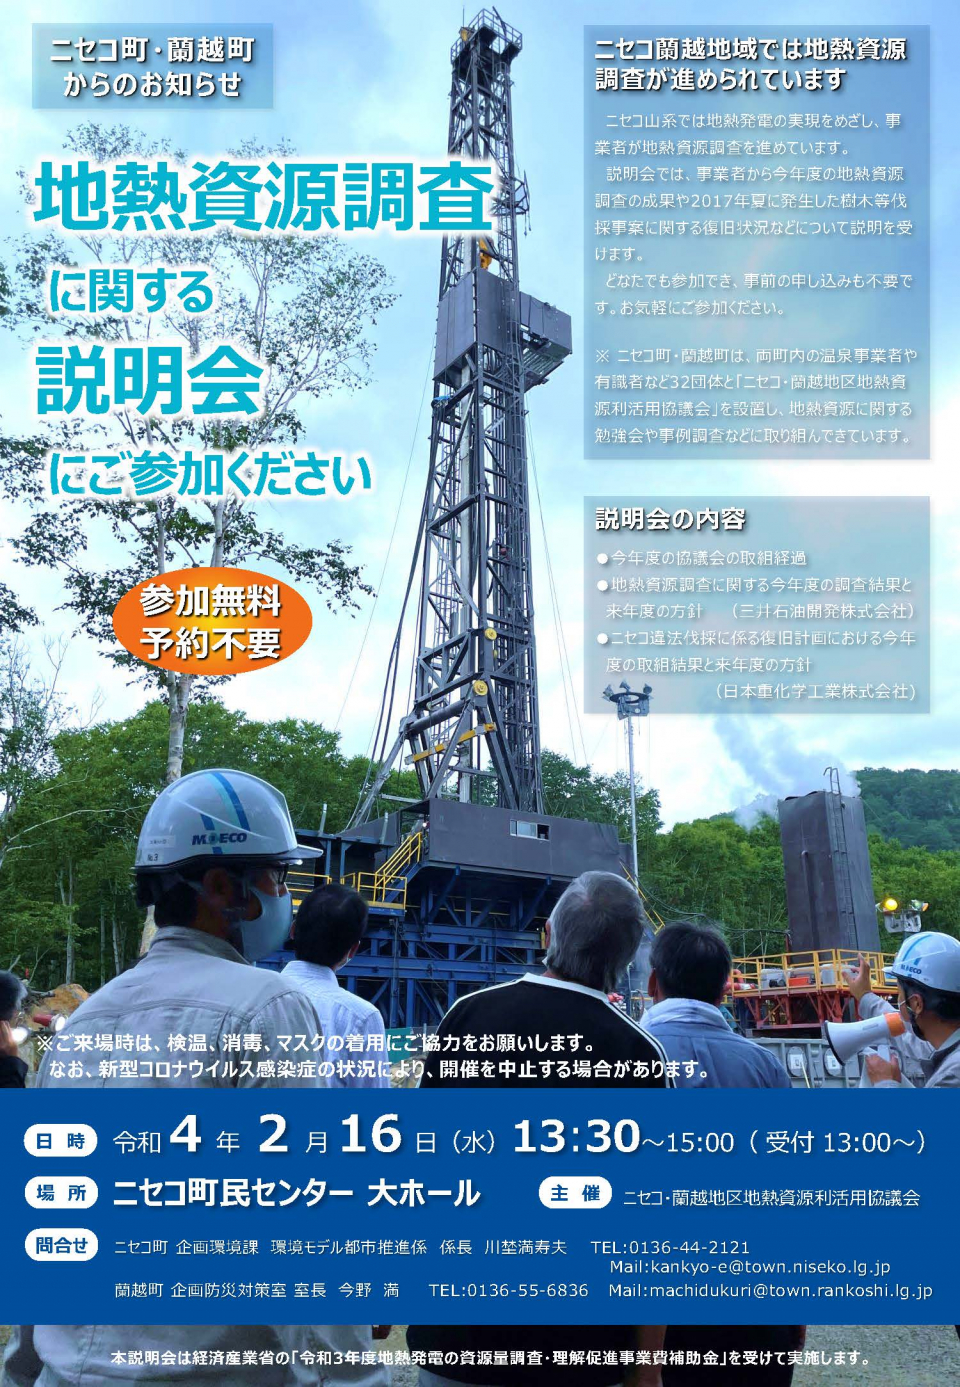 Briefing leaflet on geothermal resource survey